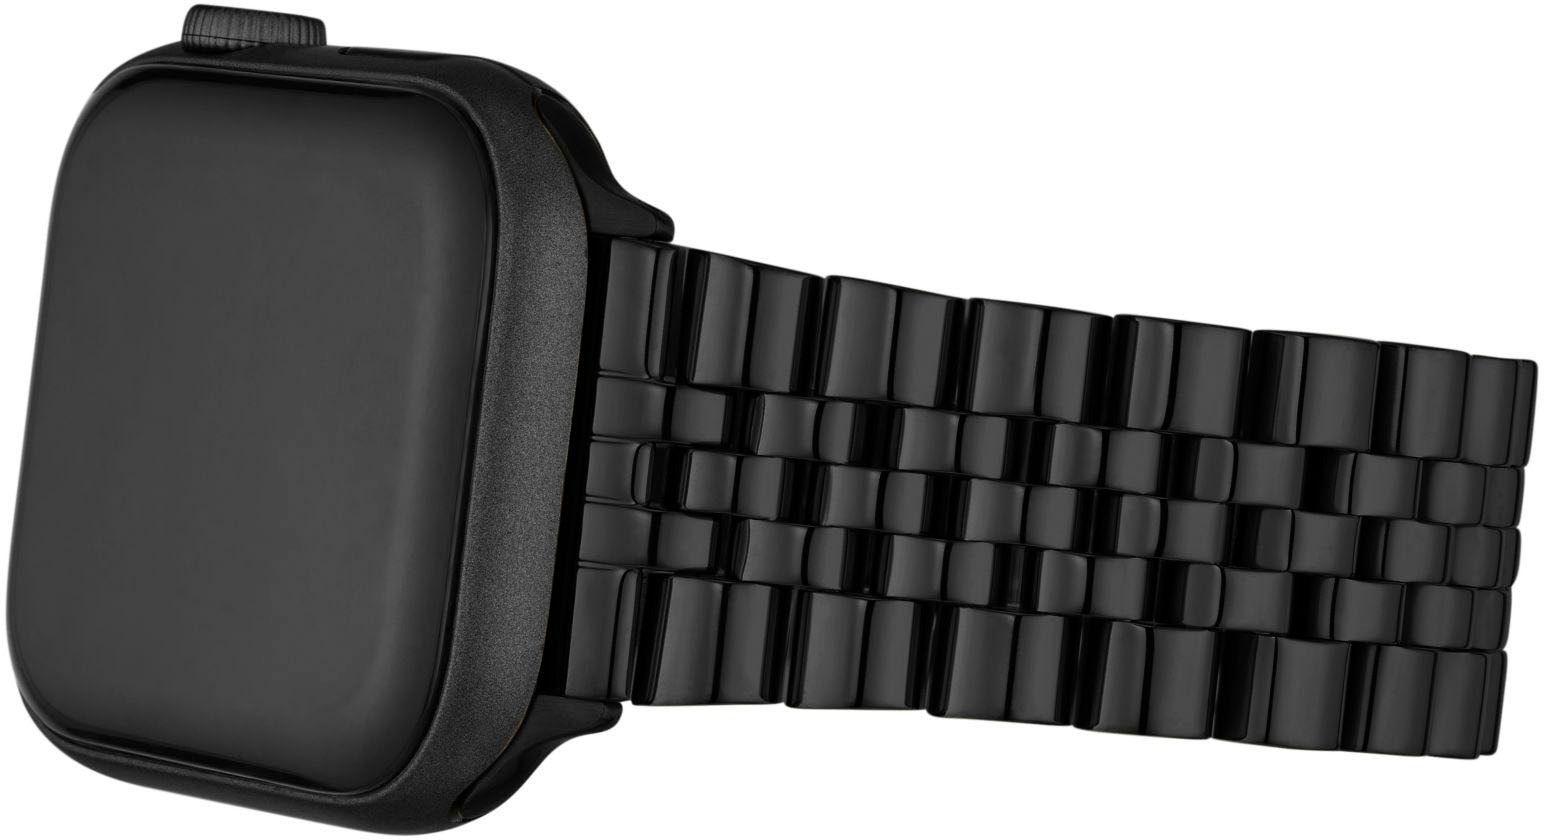 MICHAEL KORS Smartwatch-Armband »BANDS FOR APPLE WATCH, MKS8056E«, Geschenkset, Wechselarmband, Ersatzarmband für Damen & Herren, unisex